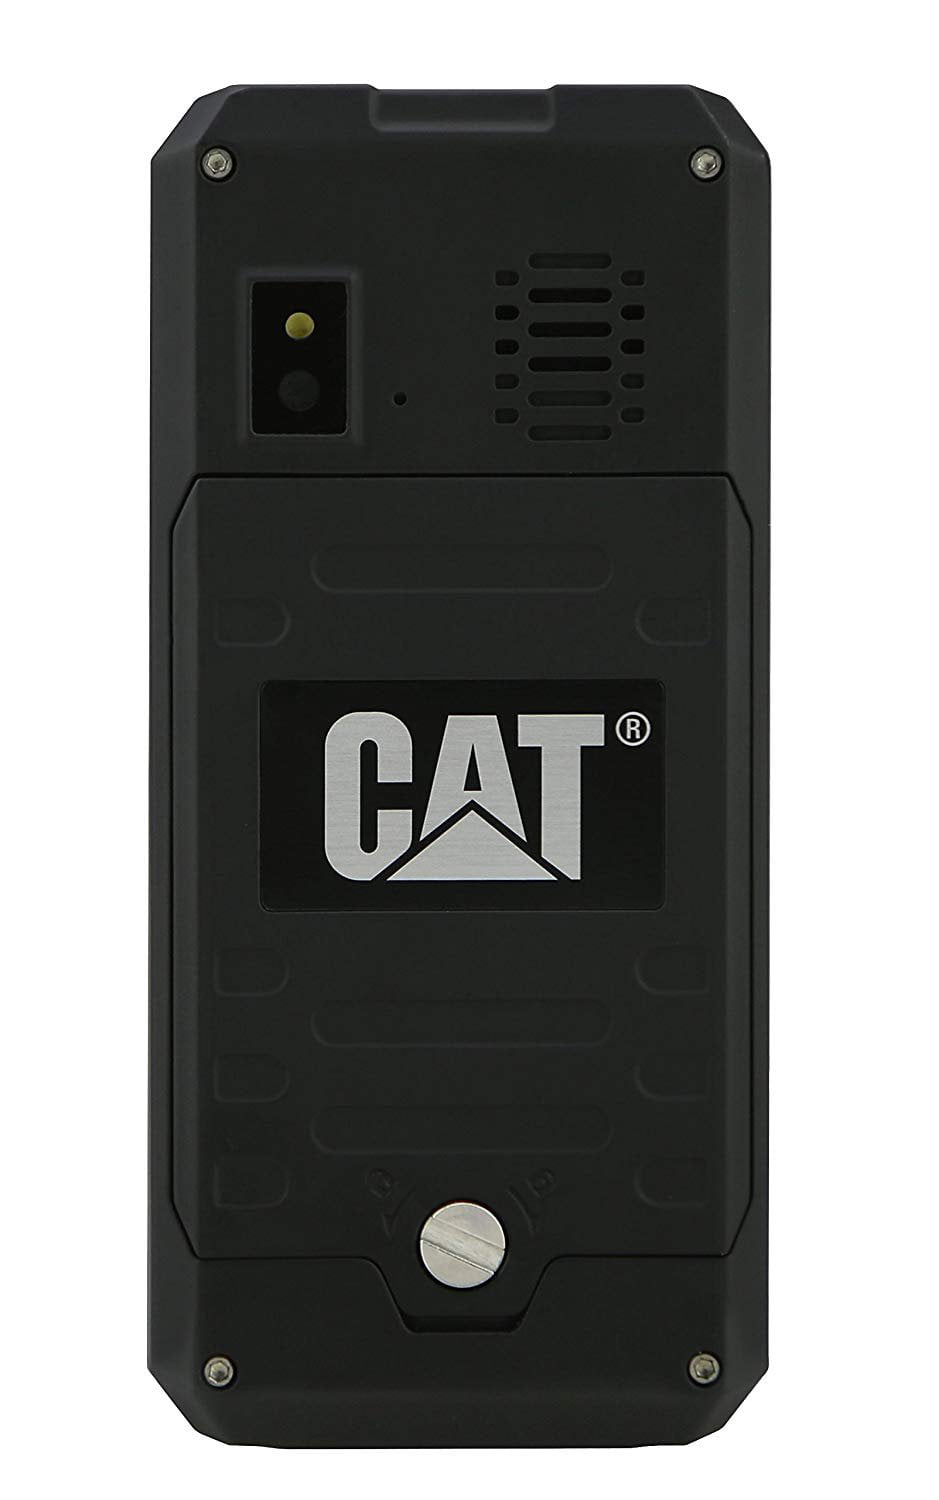 CATERPILLAR CAT B30 DUAL SIM IP67 BLACK FACTORY UNLOCKED 3G CELL PHONE